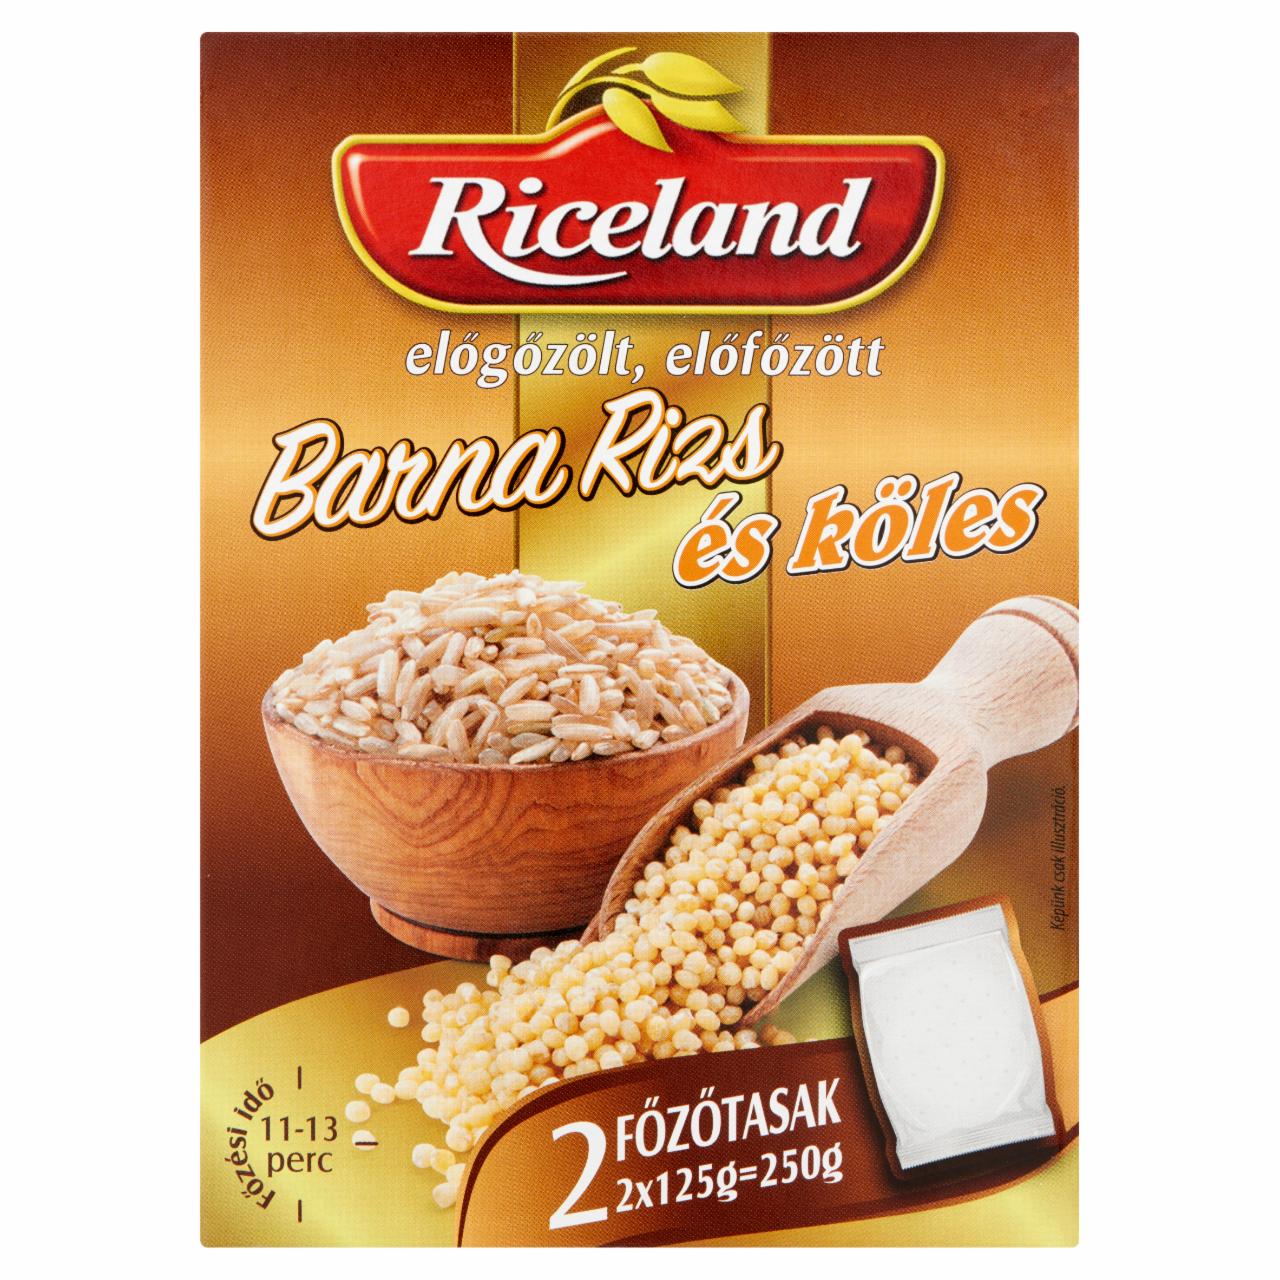 Képek - Riceland előgőzölt, előfőzött Barna rizs és Köles 2 x 125 g